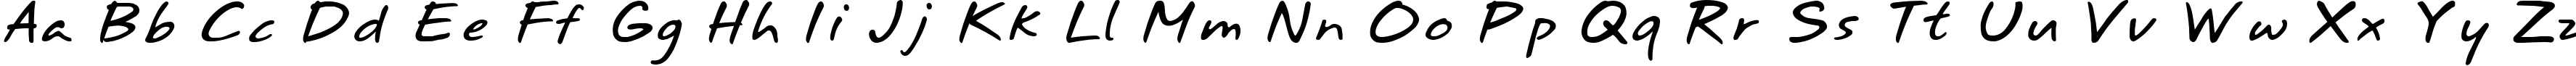 Пример написания английского алфавита шрифтом Annifont